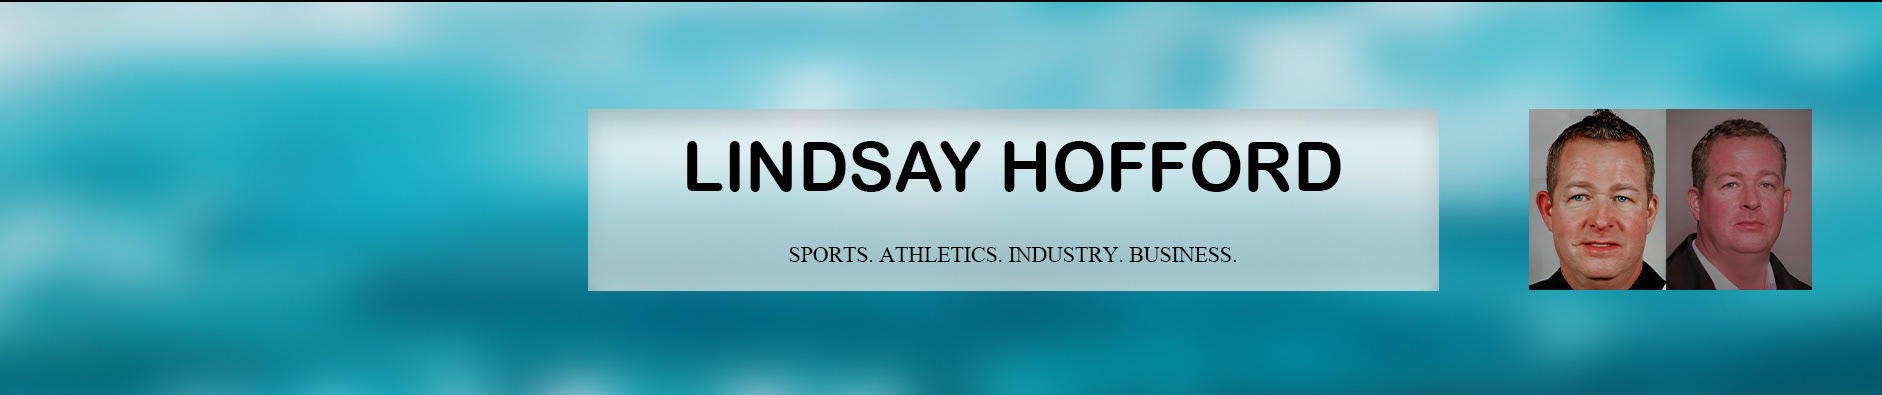 Lindsay Hofford's profile banner